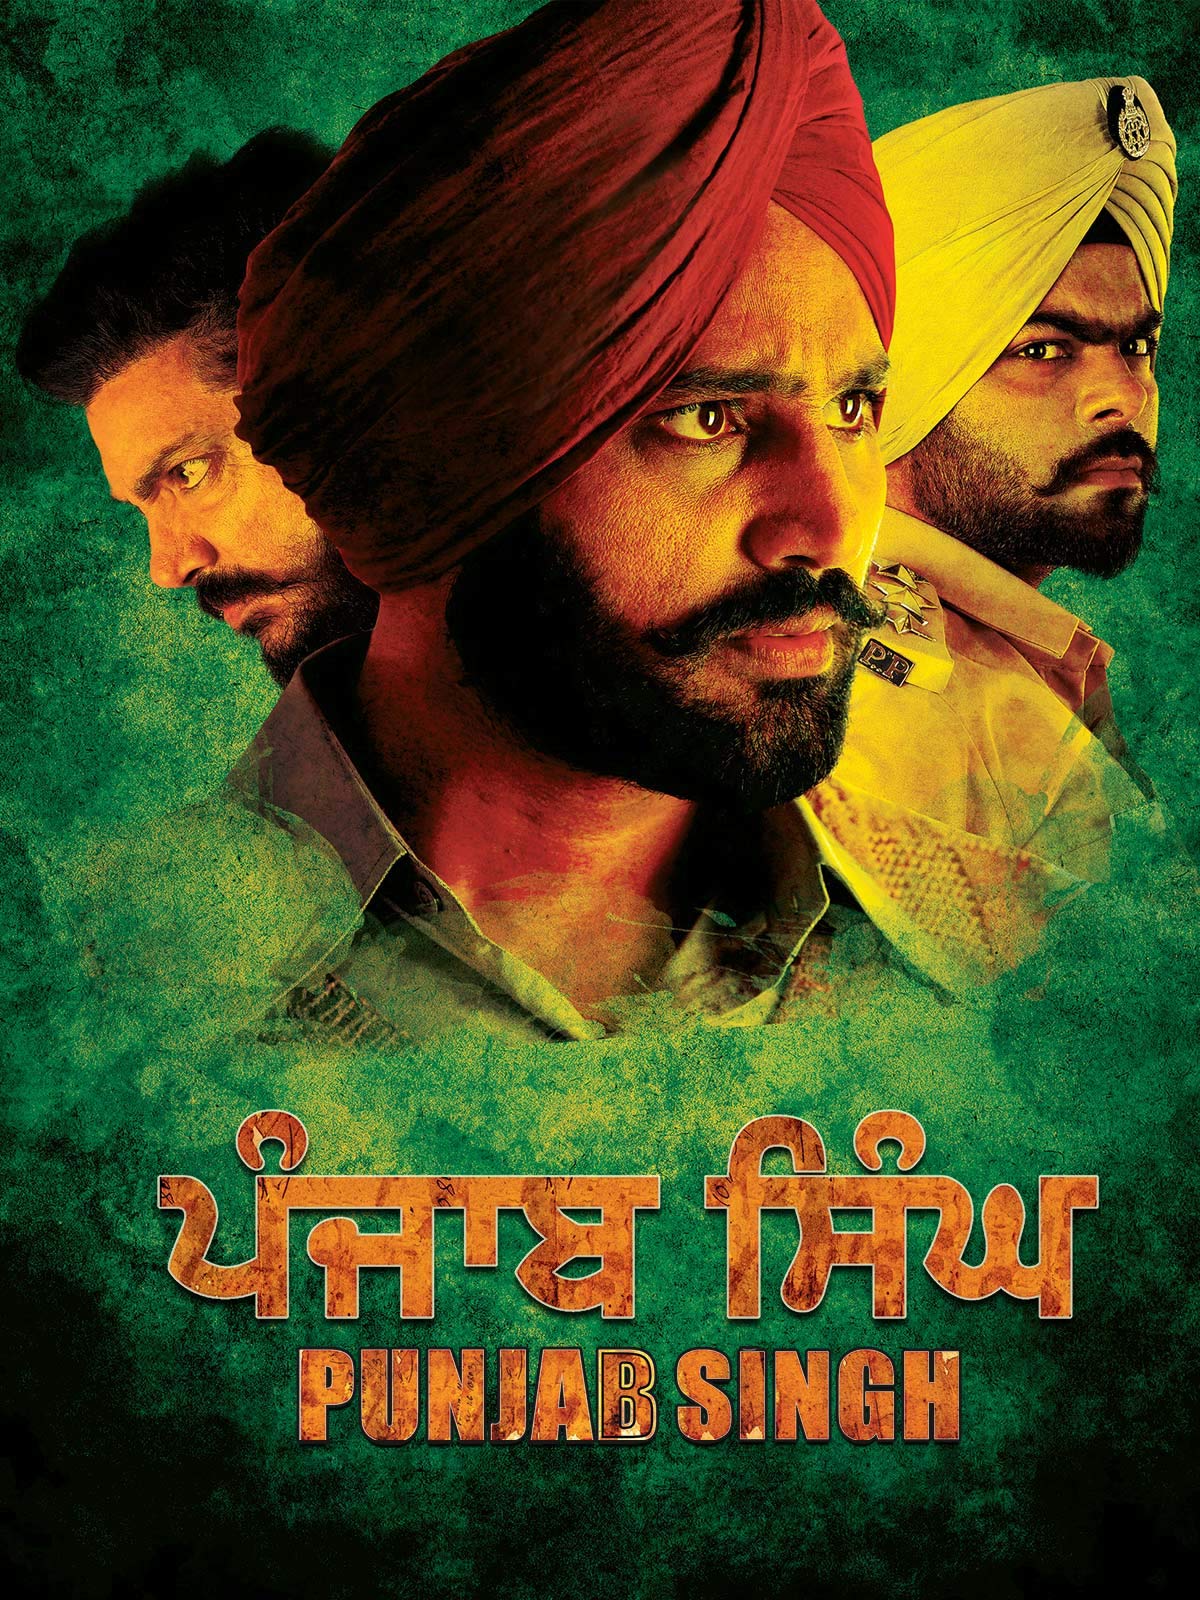 Punjab Singh 2018 6589 Poster.jpg